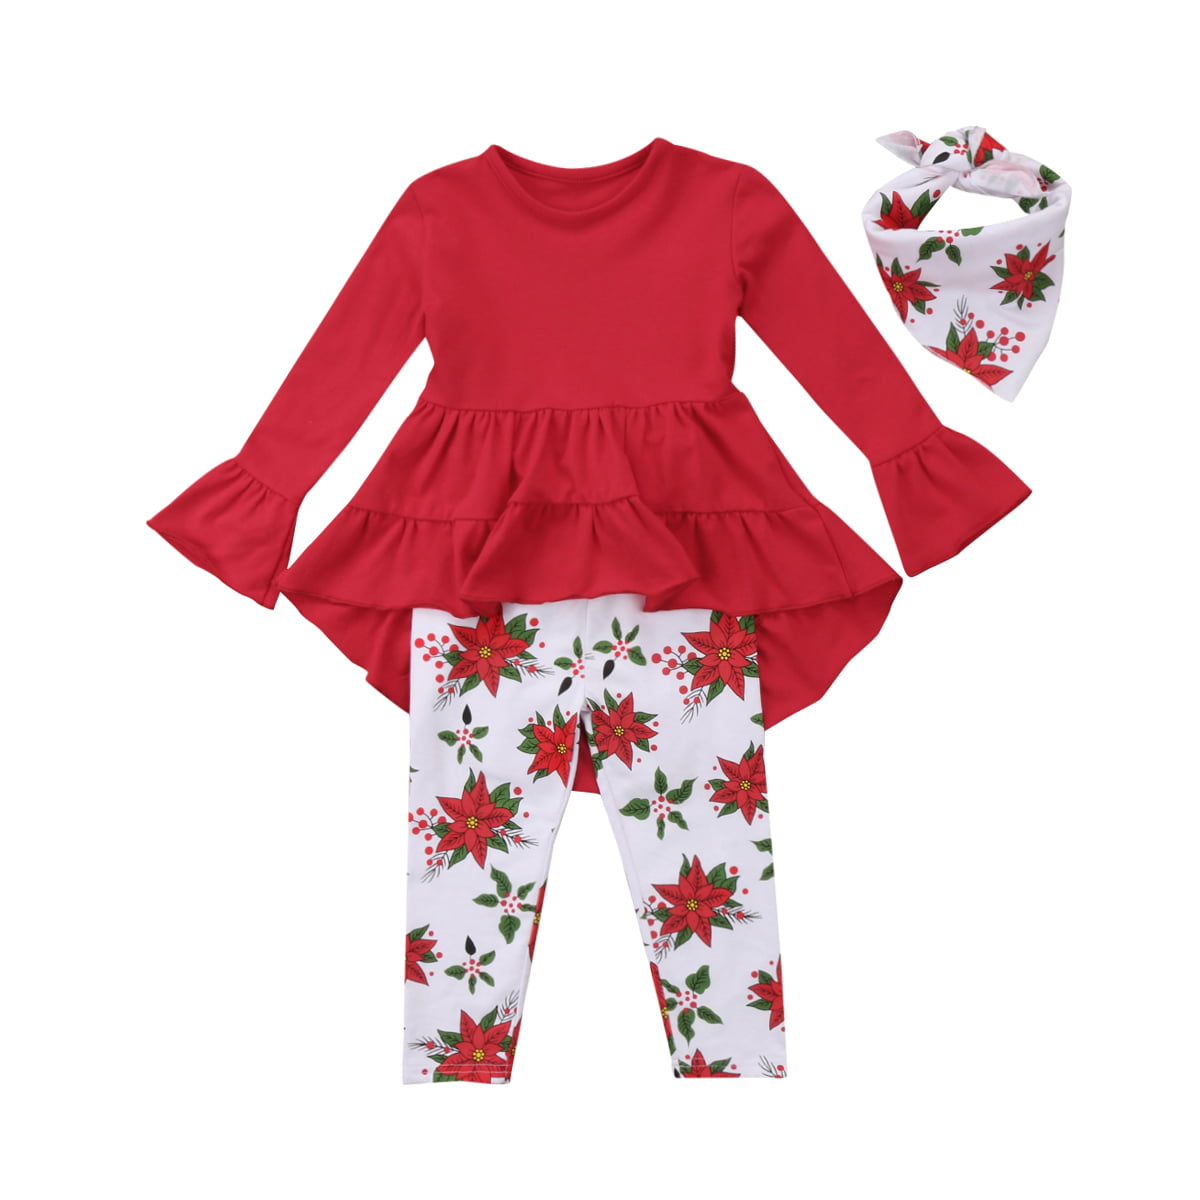 Toddler Girl Clothes Ruffles Irregular Mini Dress Tops+Long Pant Scarf 3PCS Clothing Set 